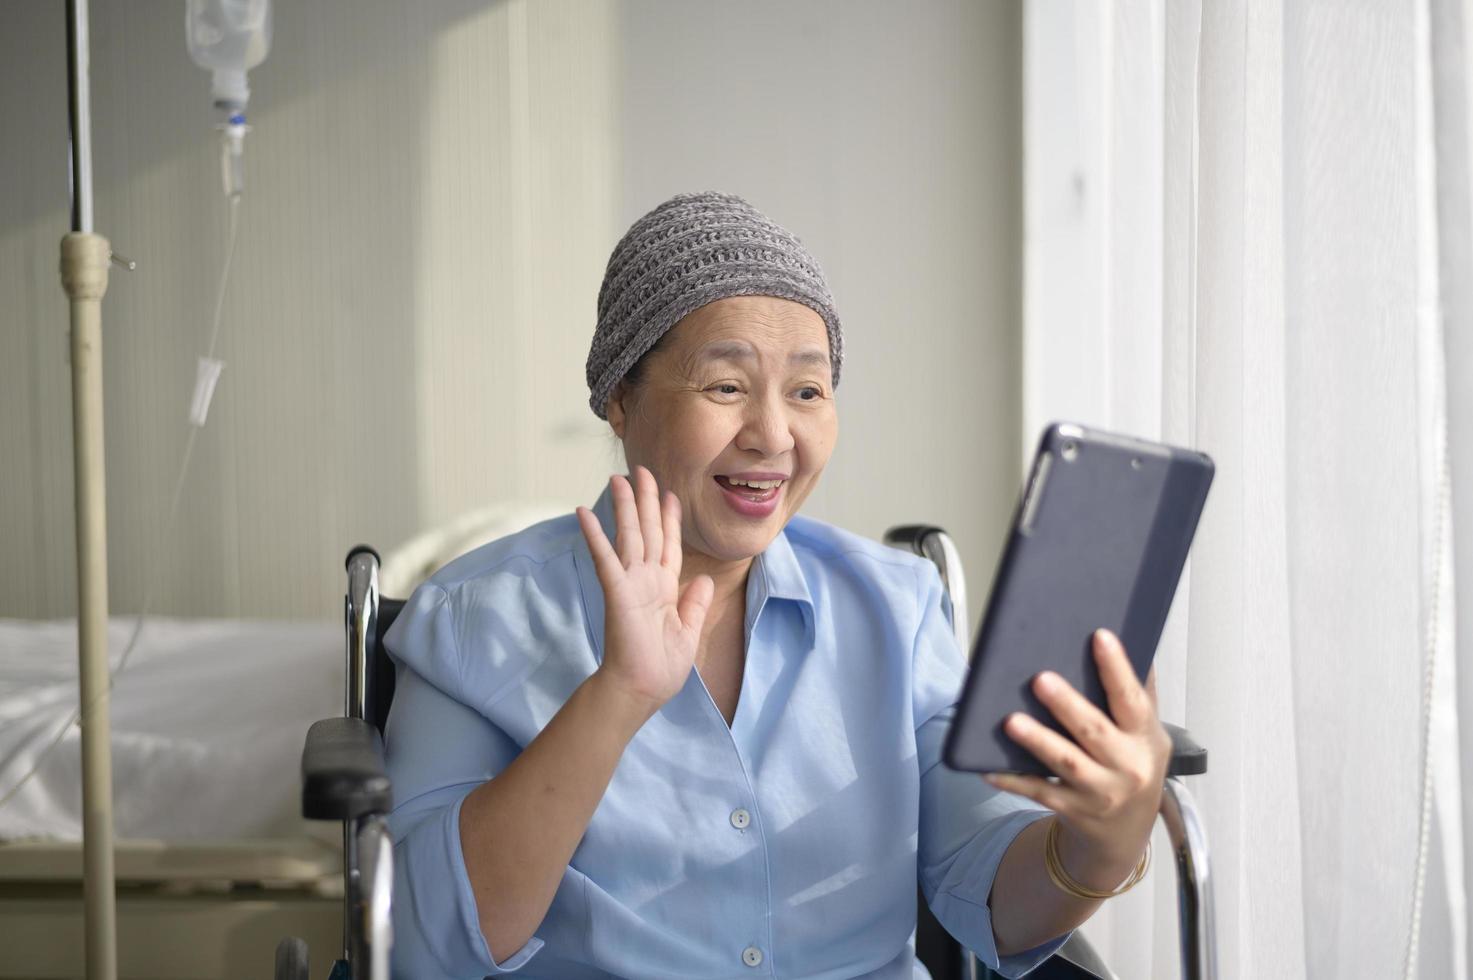 mulher paciente com câncer usando lenço na cabeça fazendo videochamada na rede social com familiares e amigos no hospital. foto